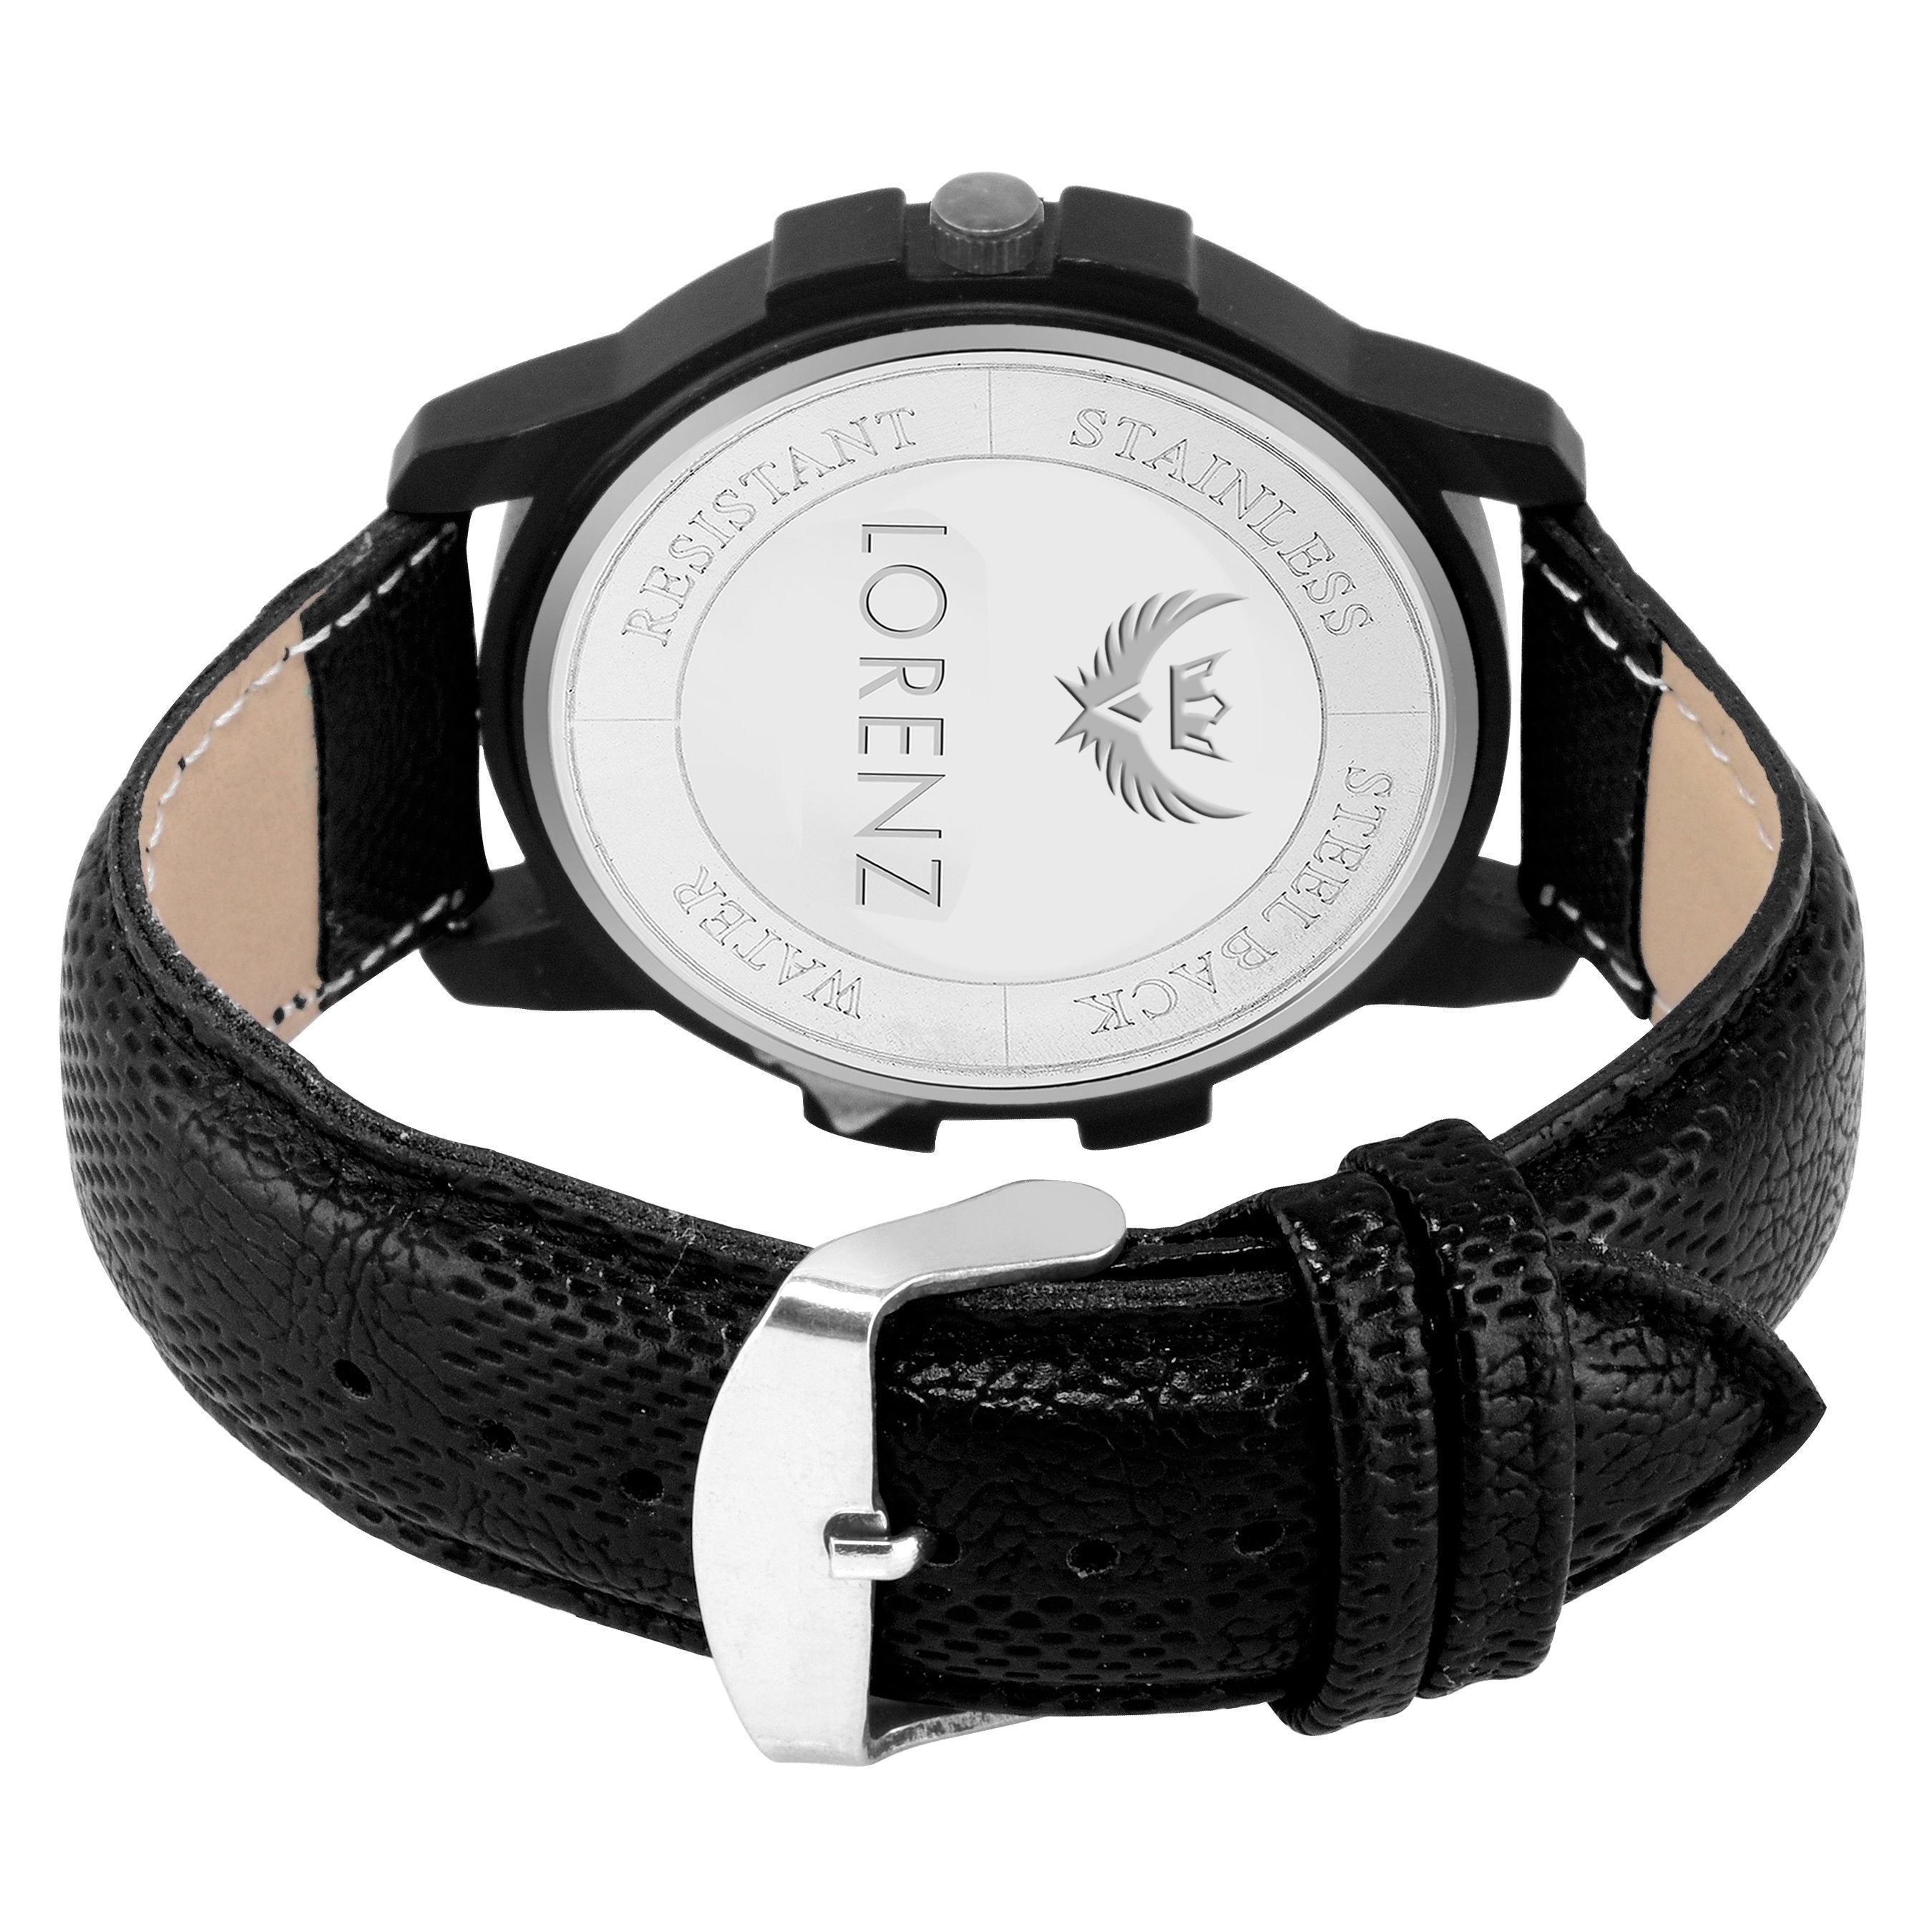 Lorenz Black dial Leather Strap Day & Date Mens watch-MK-10100A - Lorenz Fashion